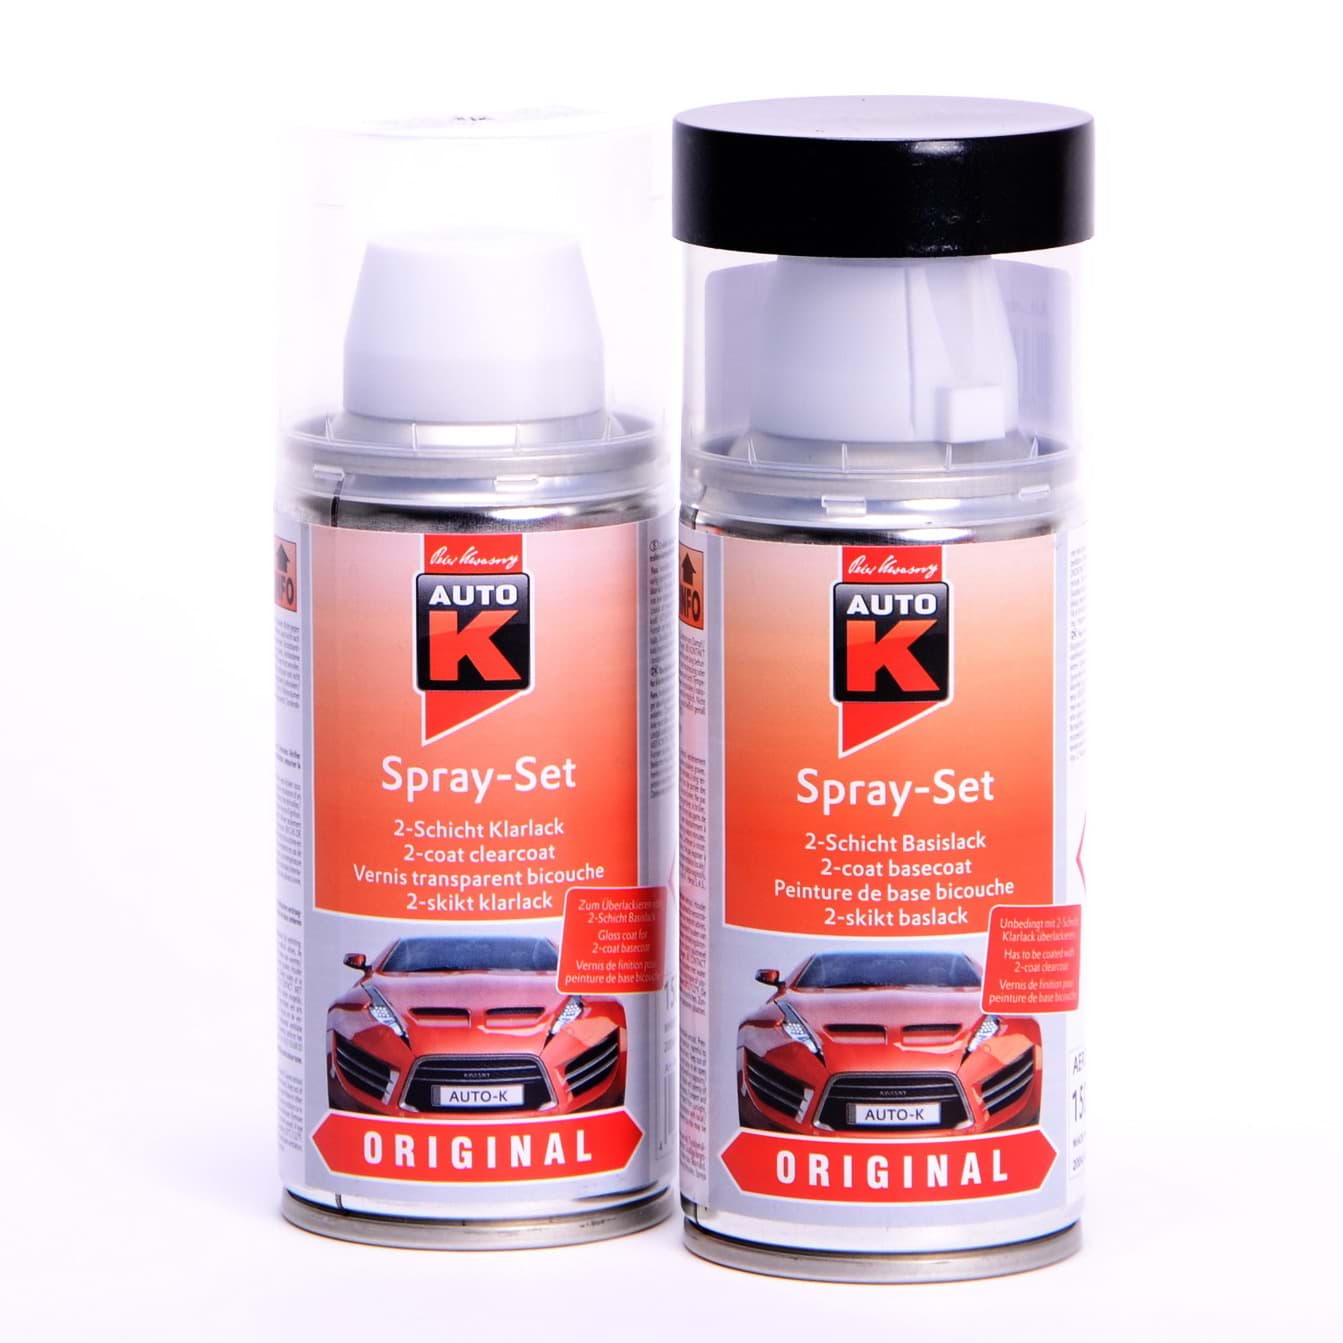 Afbeelding van Auto-K Spray-Set Autolack für Volkswagen, VW, Audi, LY9C Ibisweiß 20127